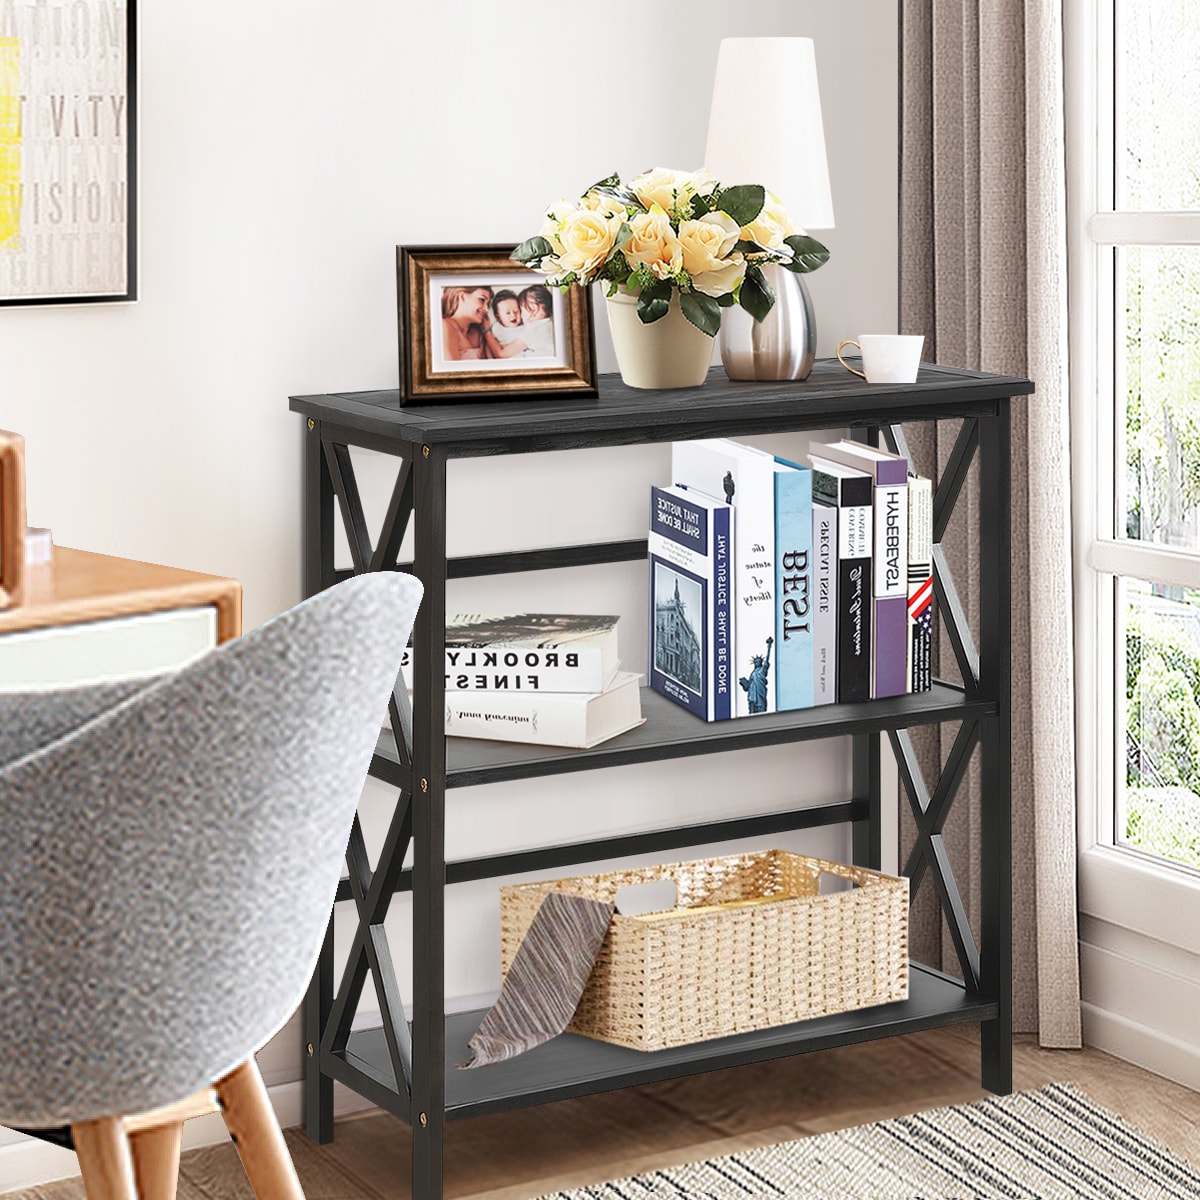 3-Tier Bookcase Shelves Book Storage Small Size Furniture Smart Design Espresso 